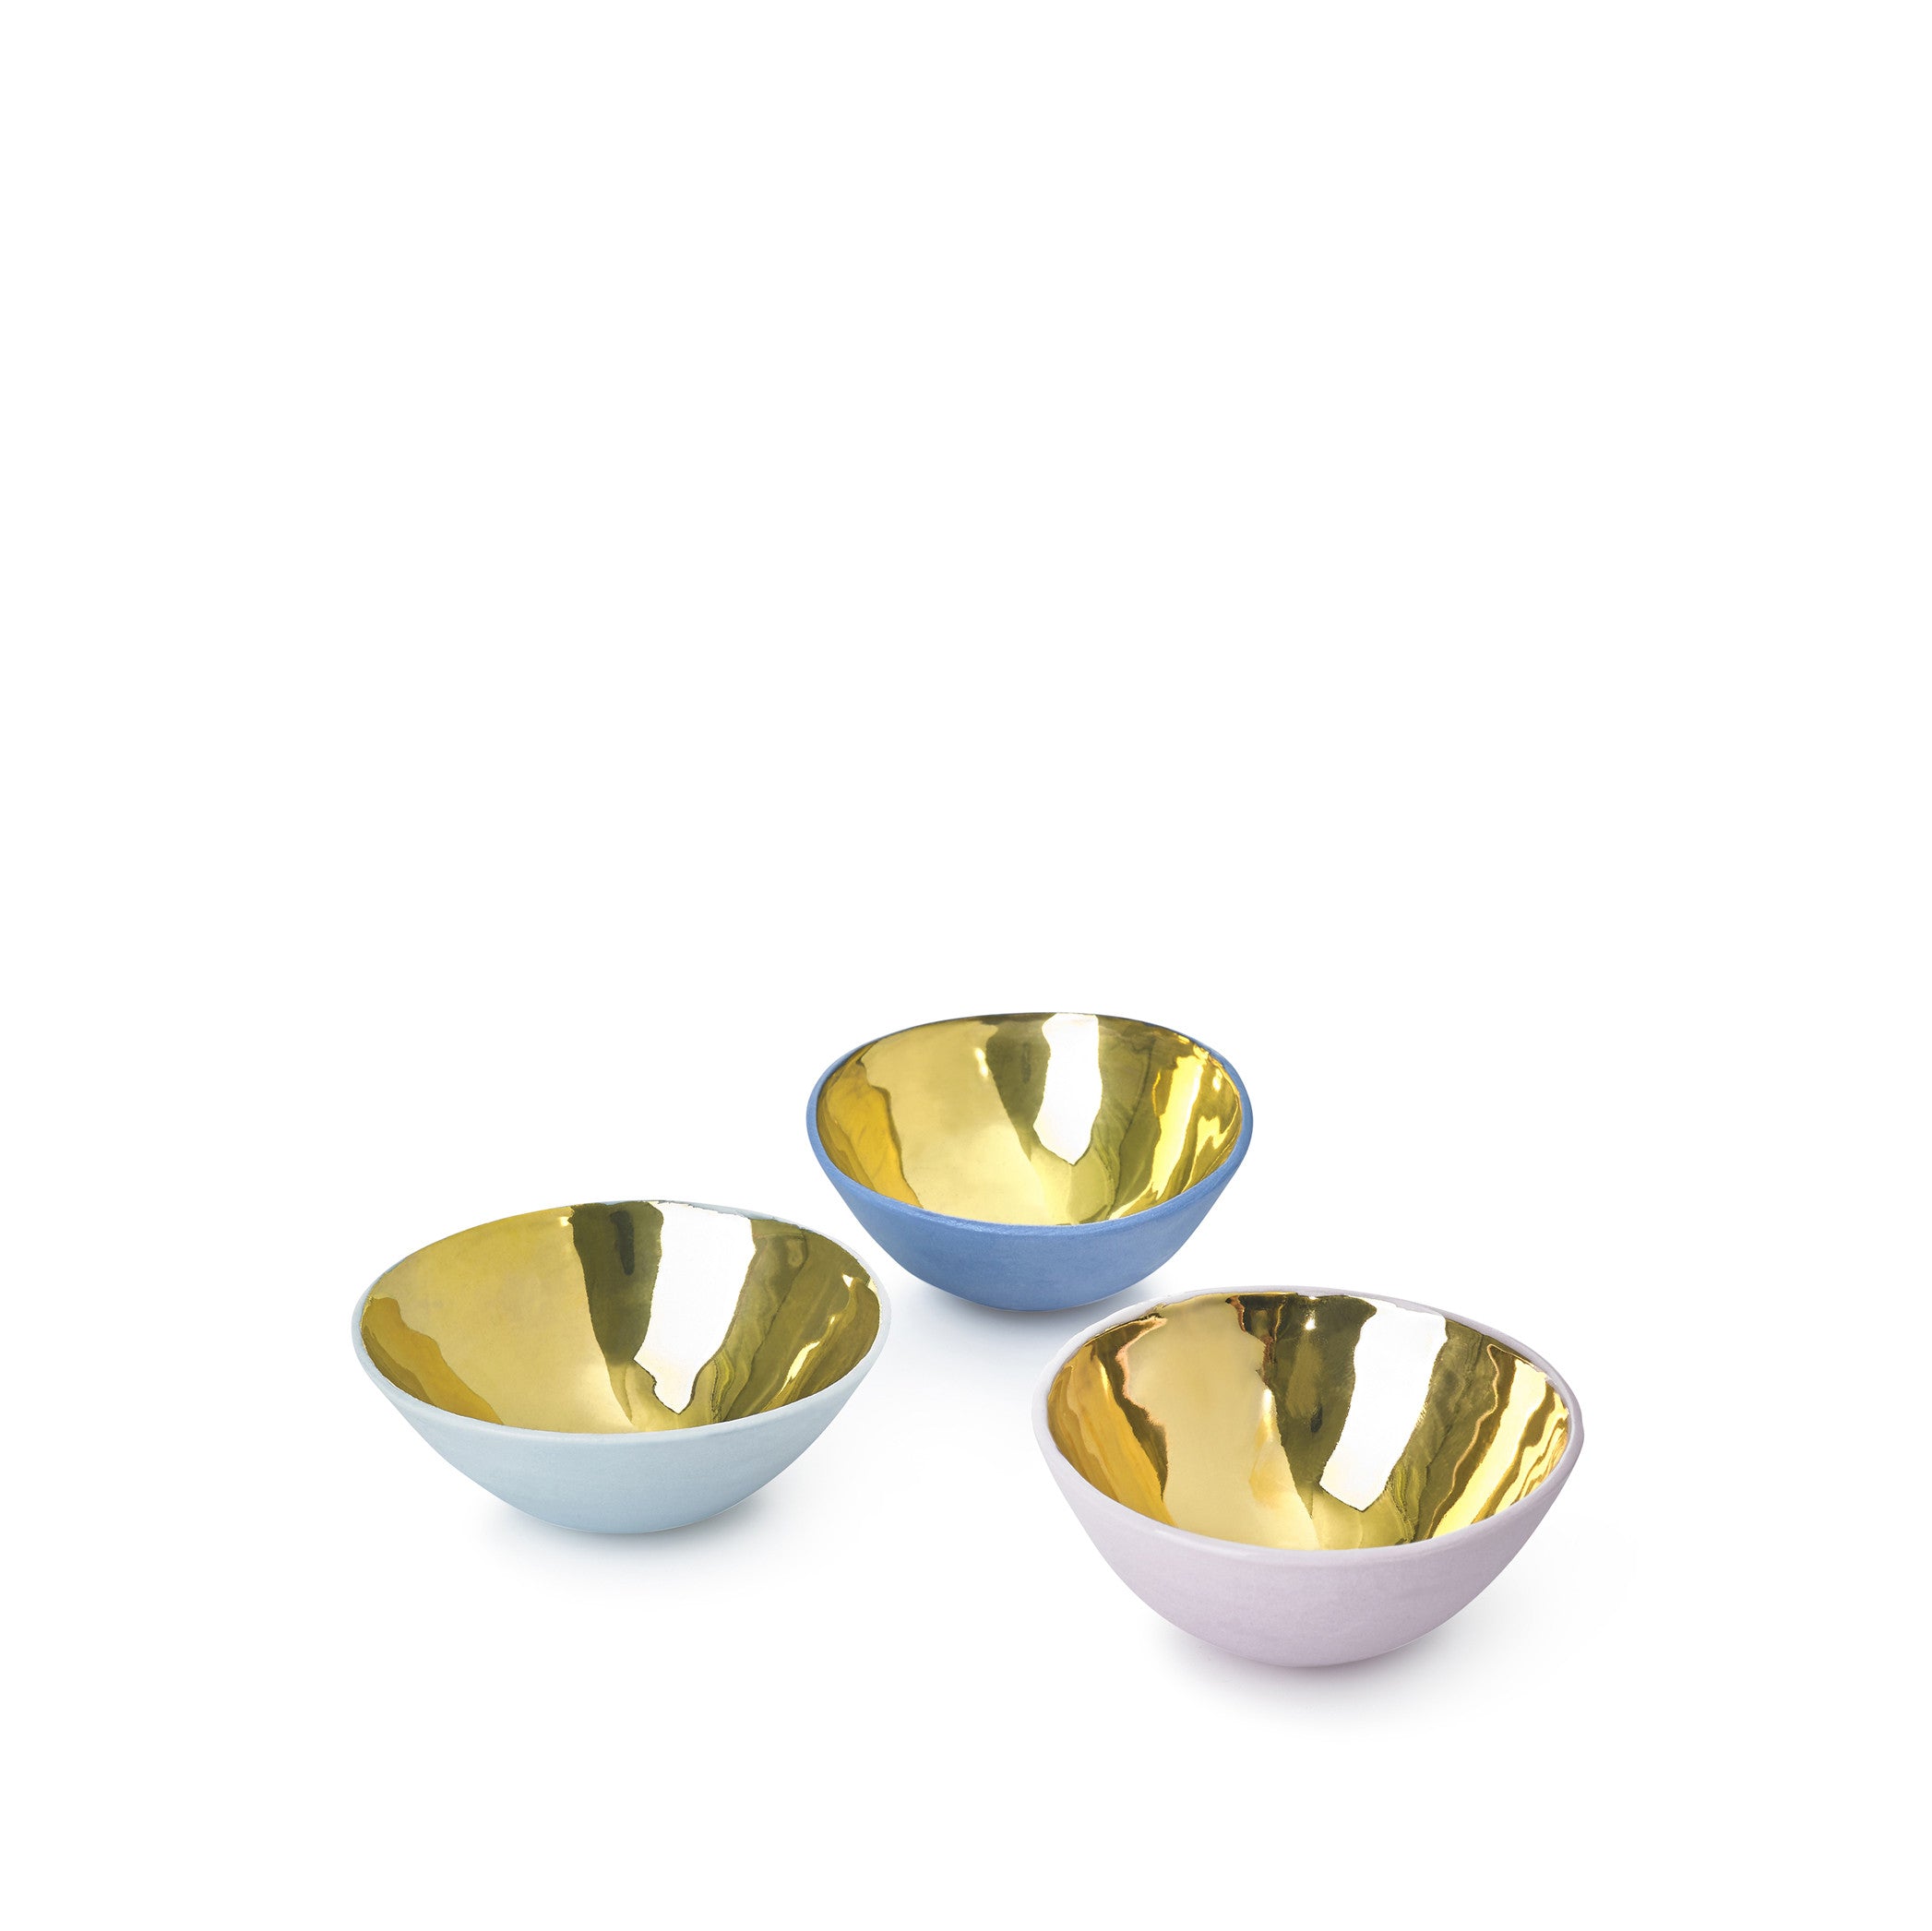 Small Blue Ceramic Bowl with Gold Glaze, 6cm